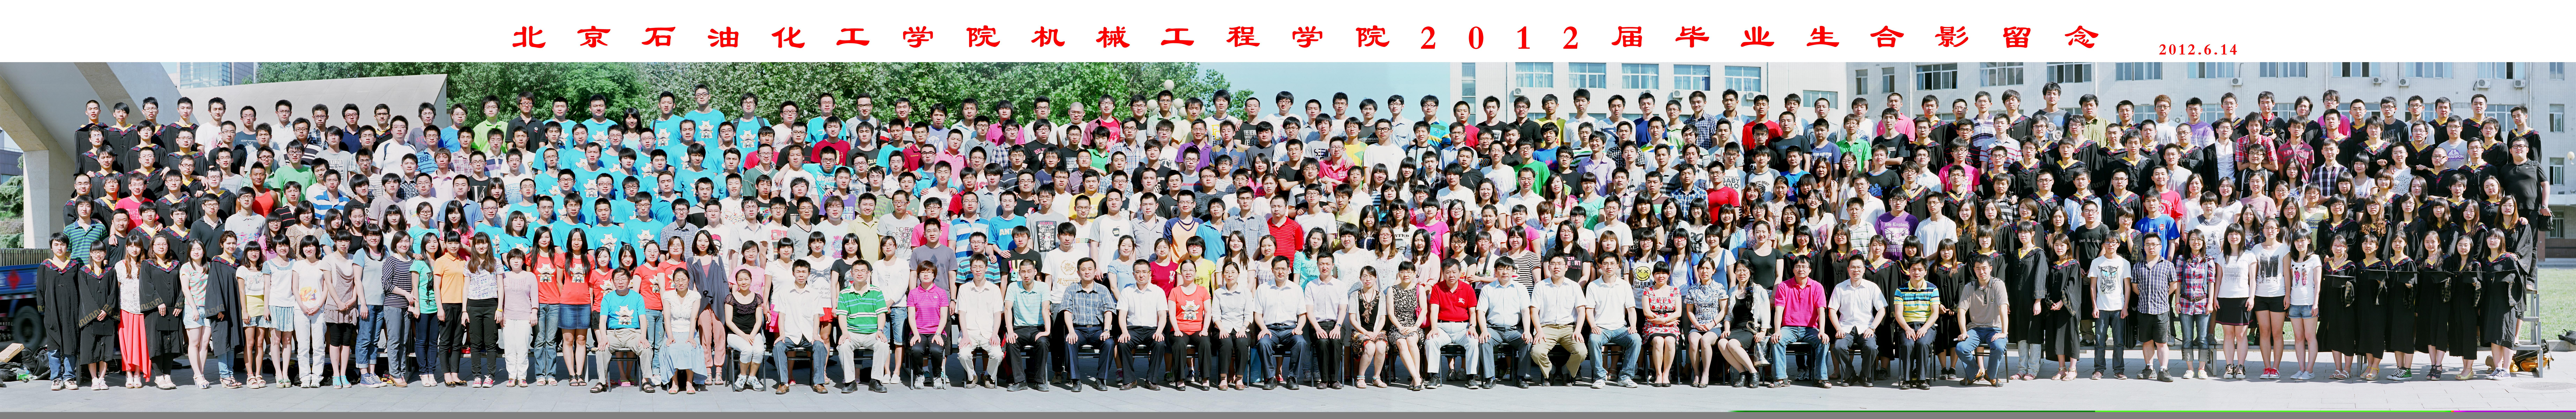 银河集团:198net有限公司机械工程学院2012届毕业生合影-1.jpg